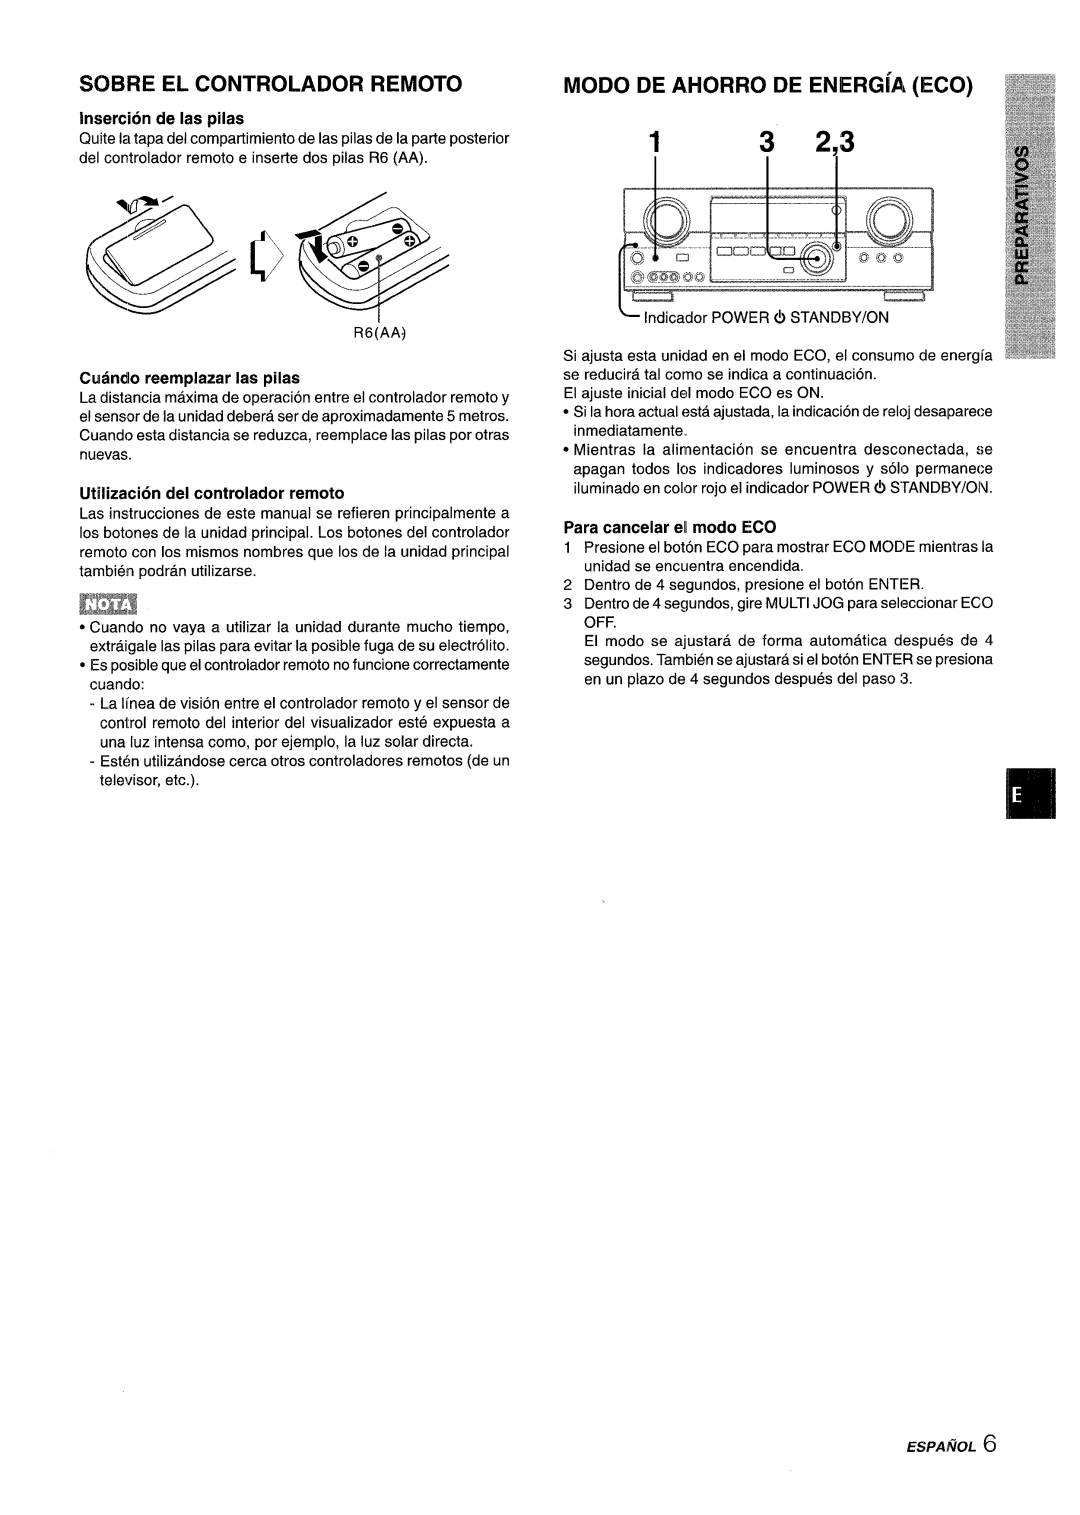 Aiwa AV-D35 manual SOB13E EL CONTROLADOR REMOTO, MODO DE AHORRO DE ENERGhl, ECO, l.l5, lnsercir5n de Ias piias 